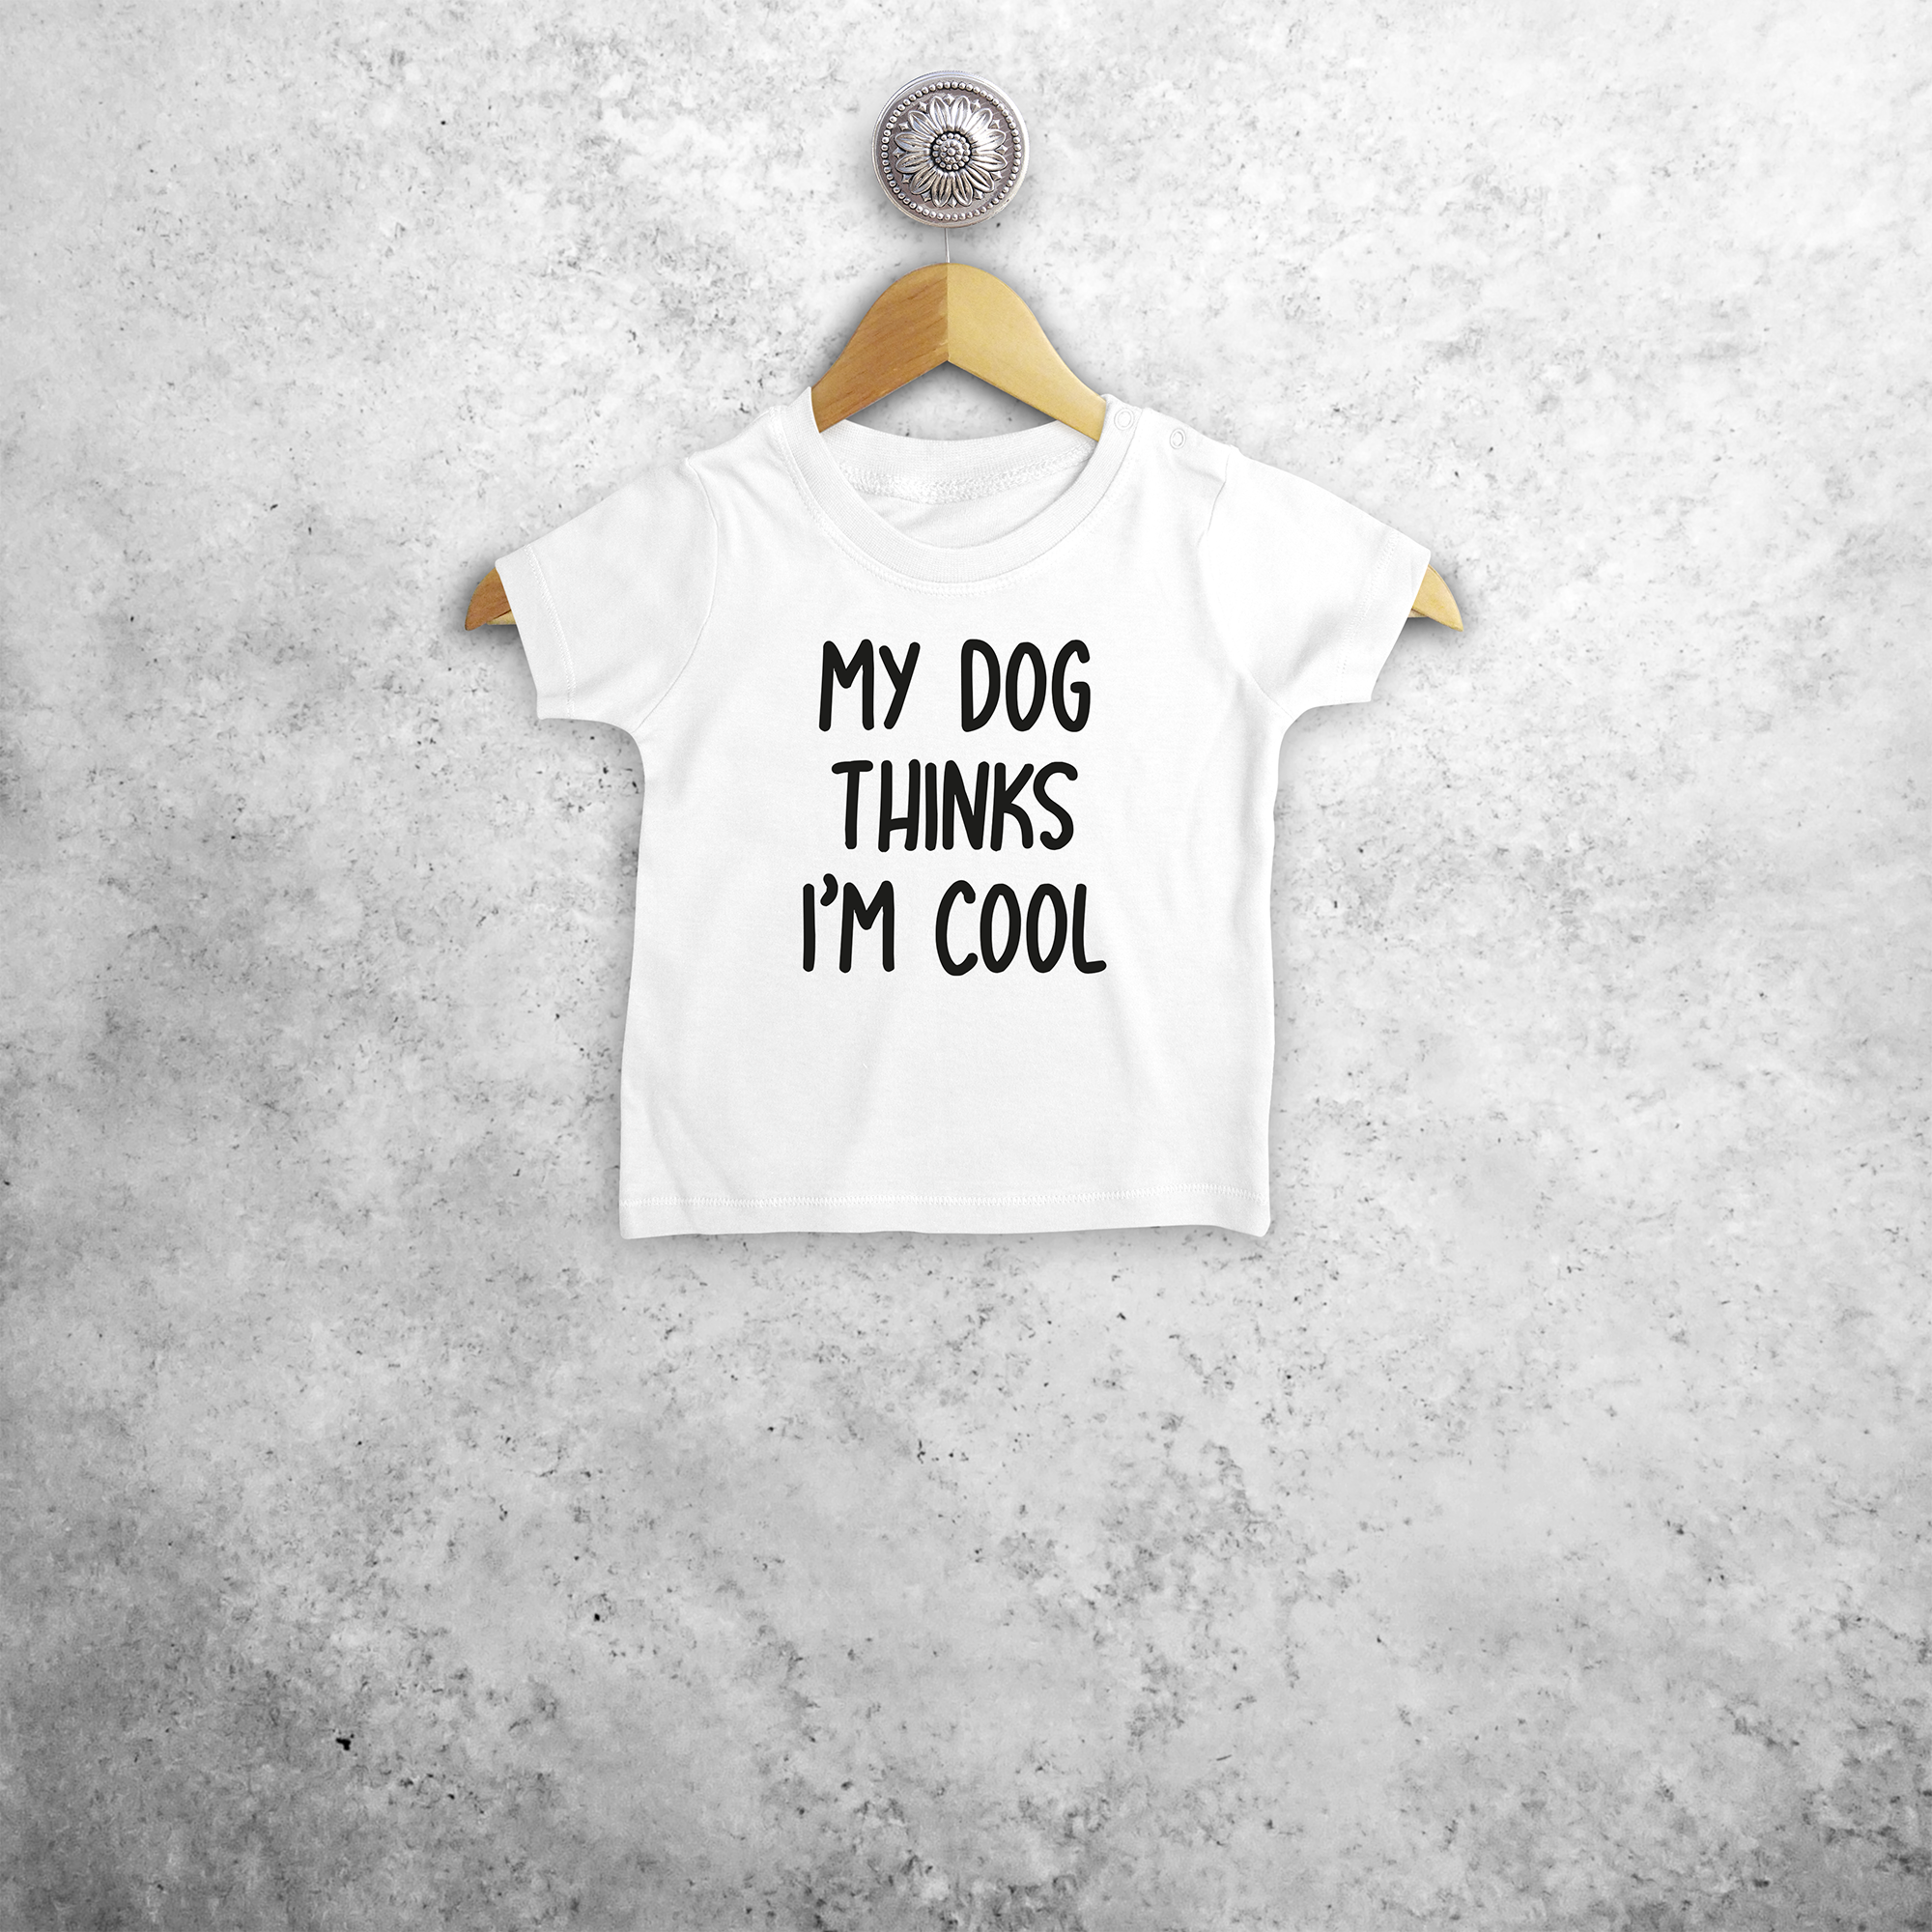 'My dog thinks I'm cool' baby shortsleeve shirt